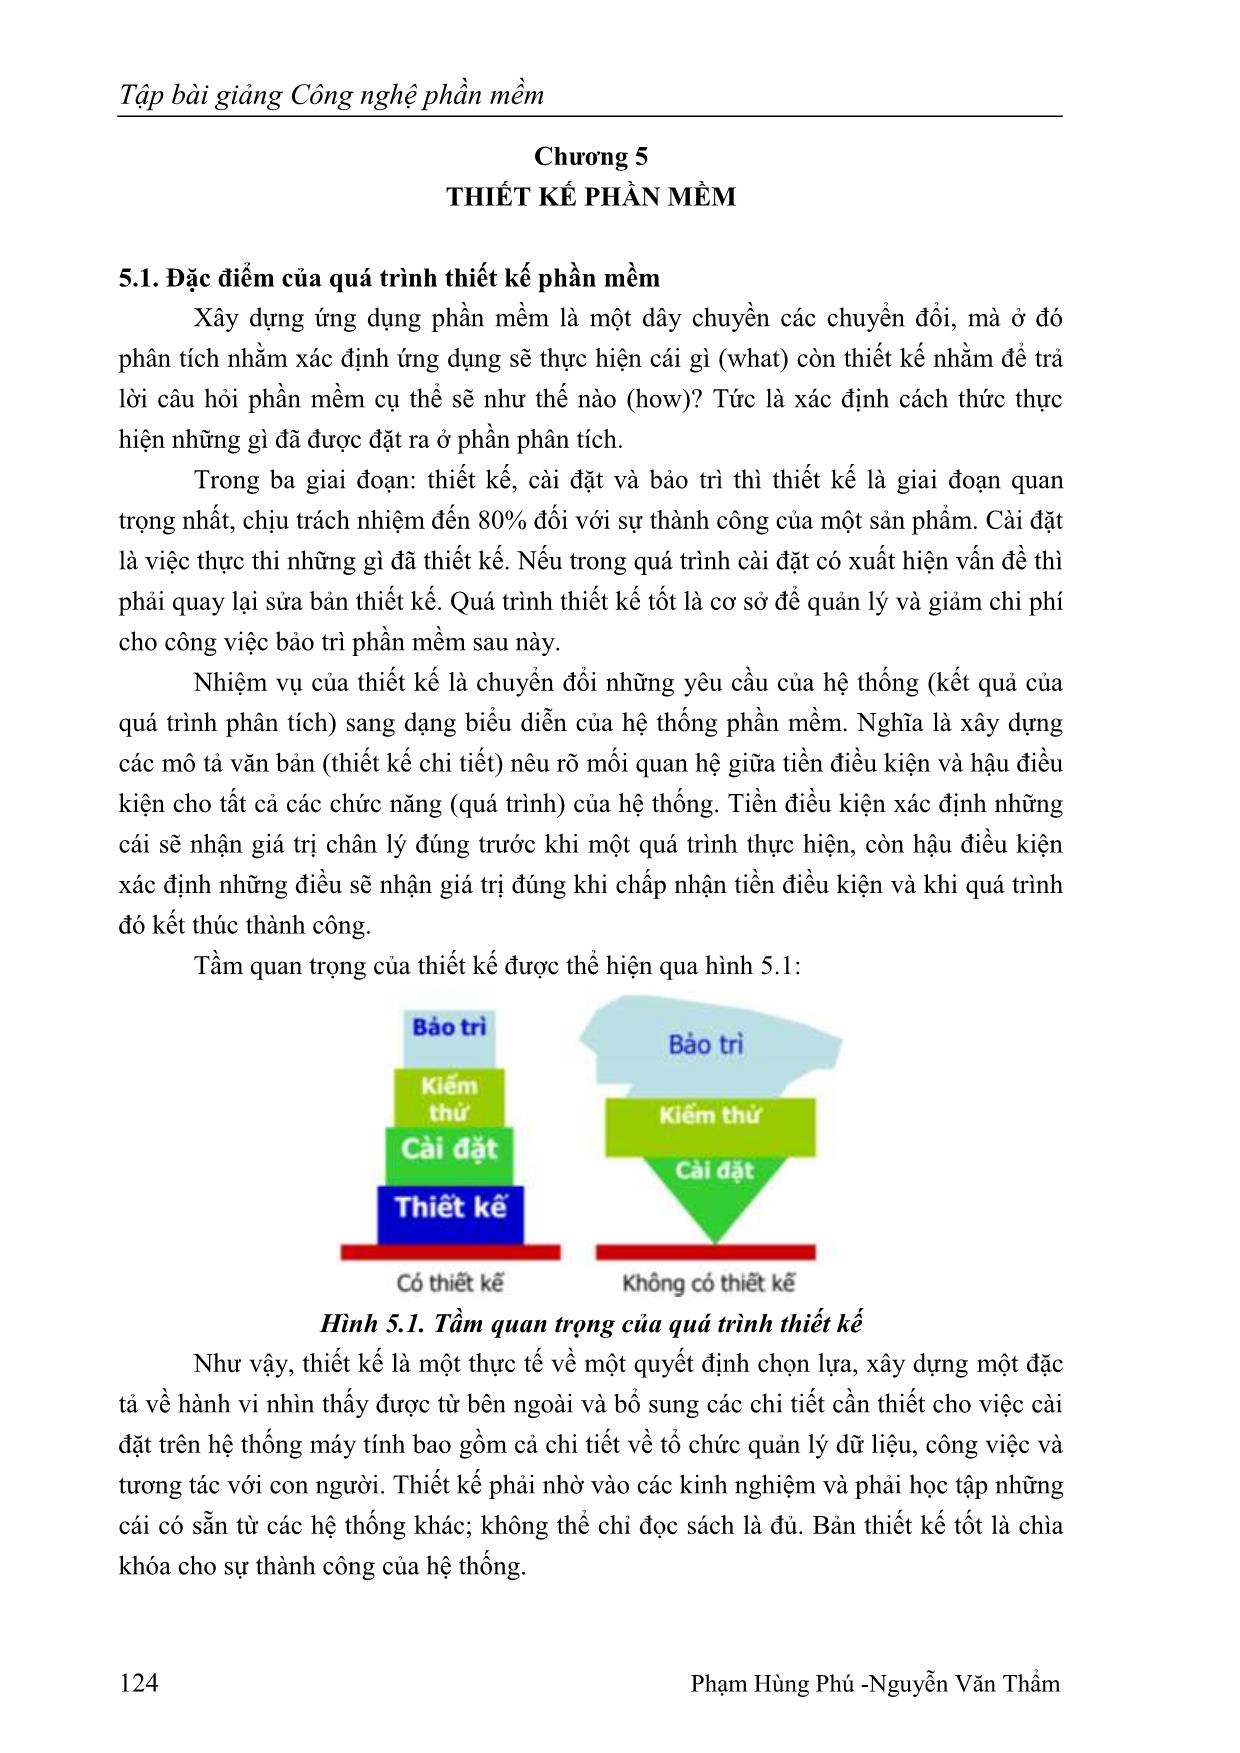 Giáo trình Công nghệ phần mềm (Phần 2) trang 1